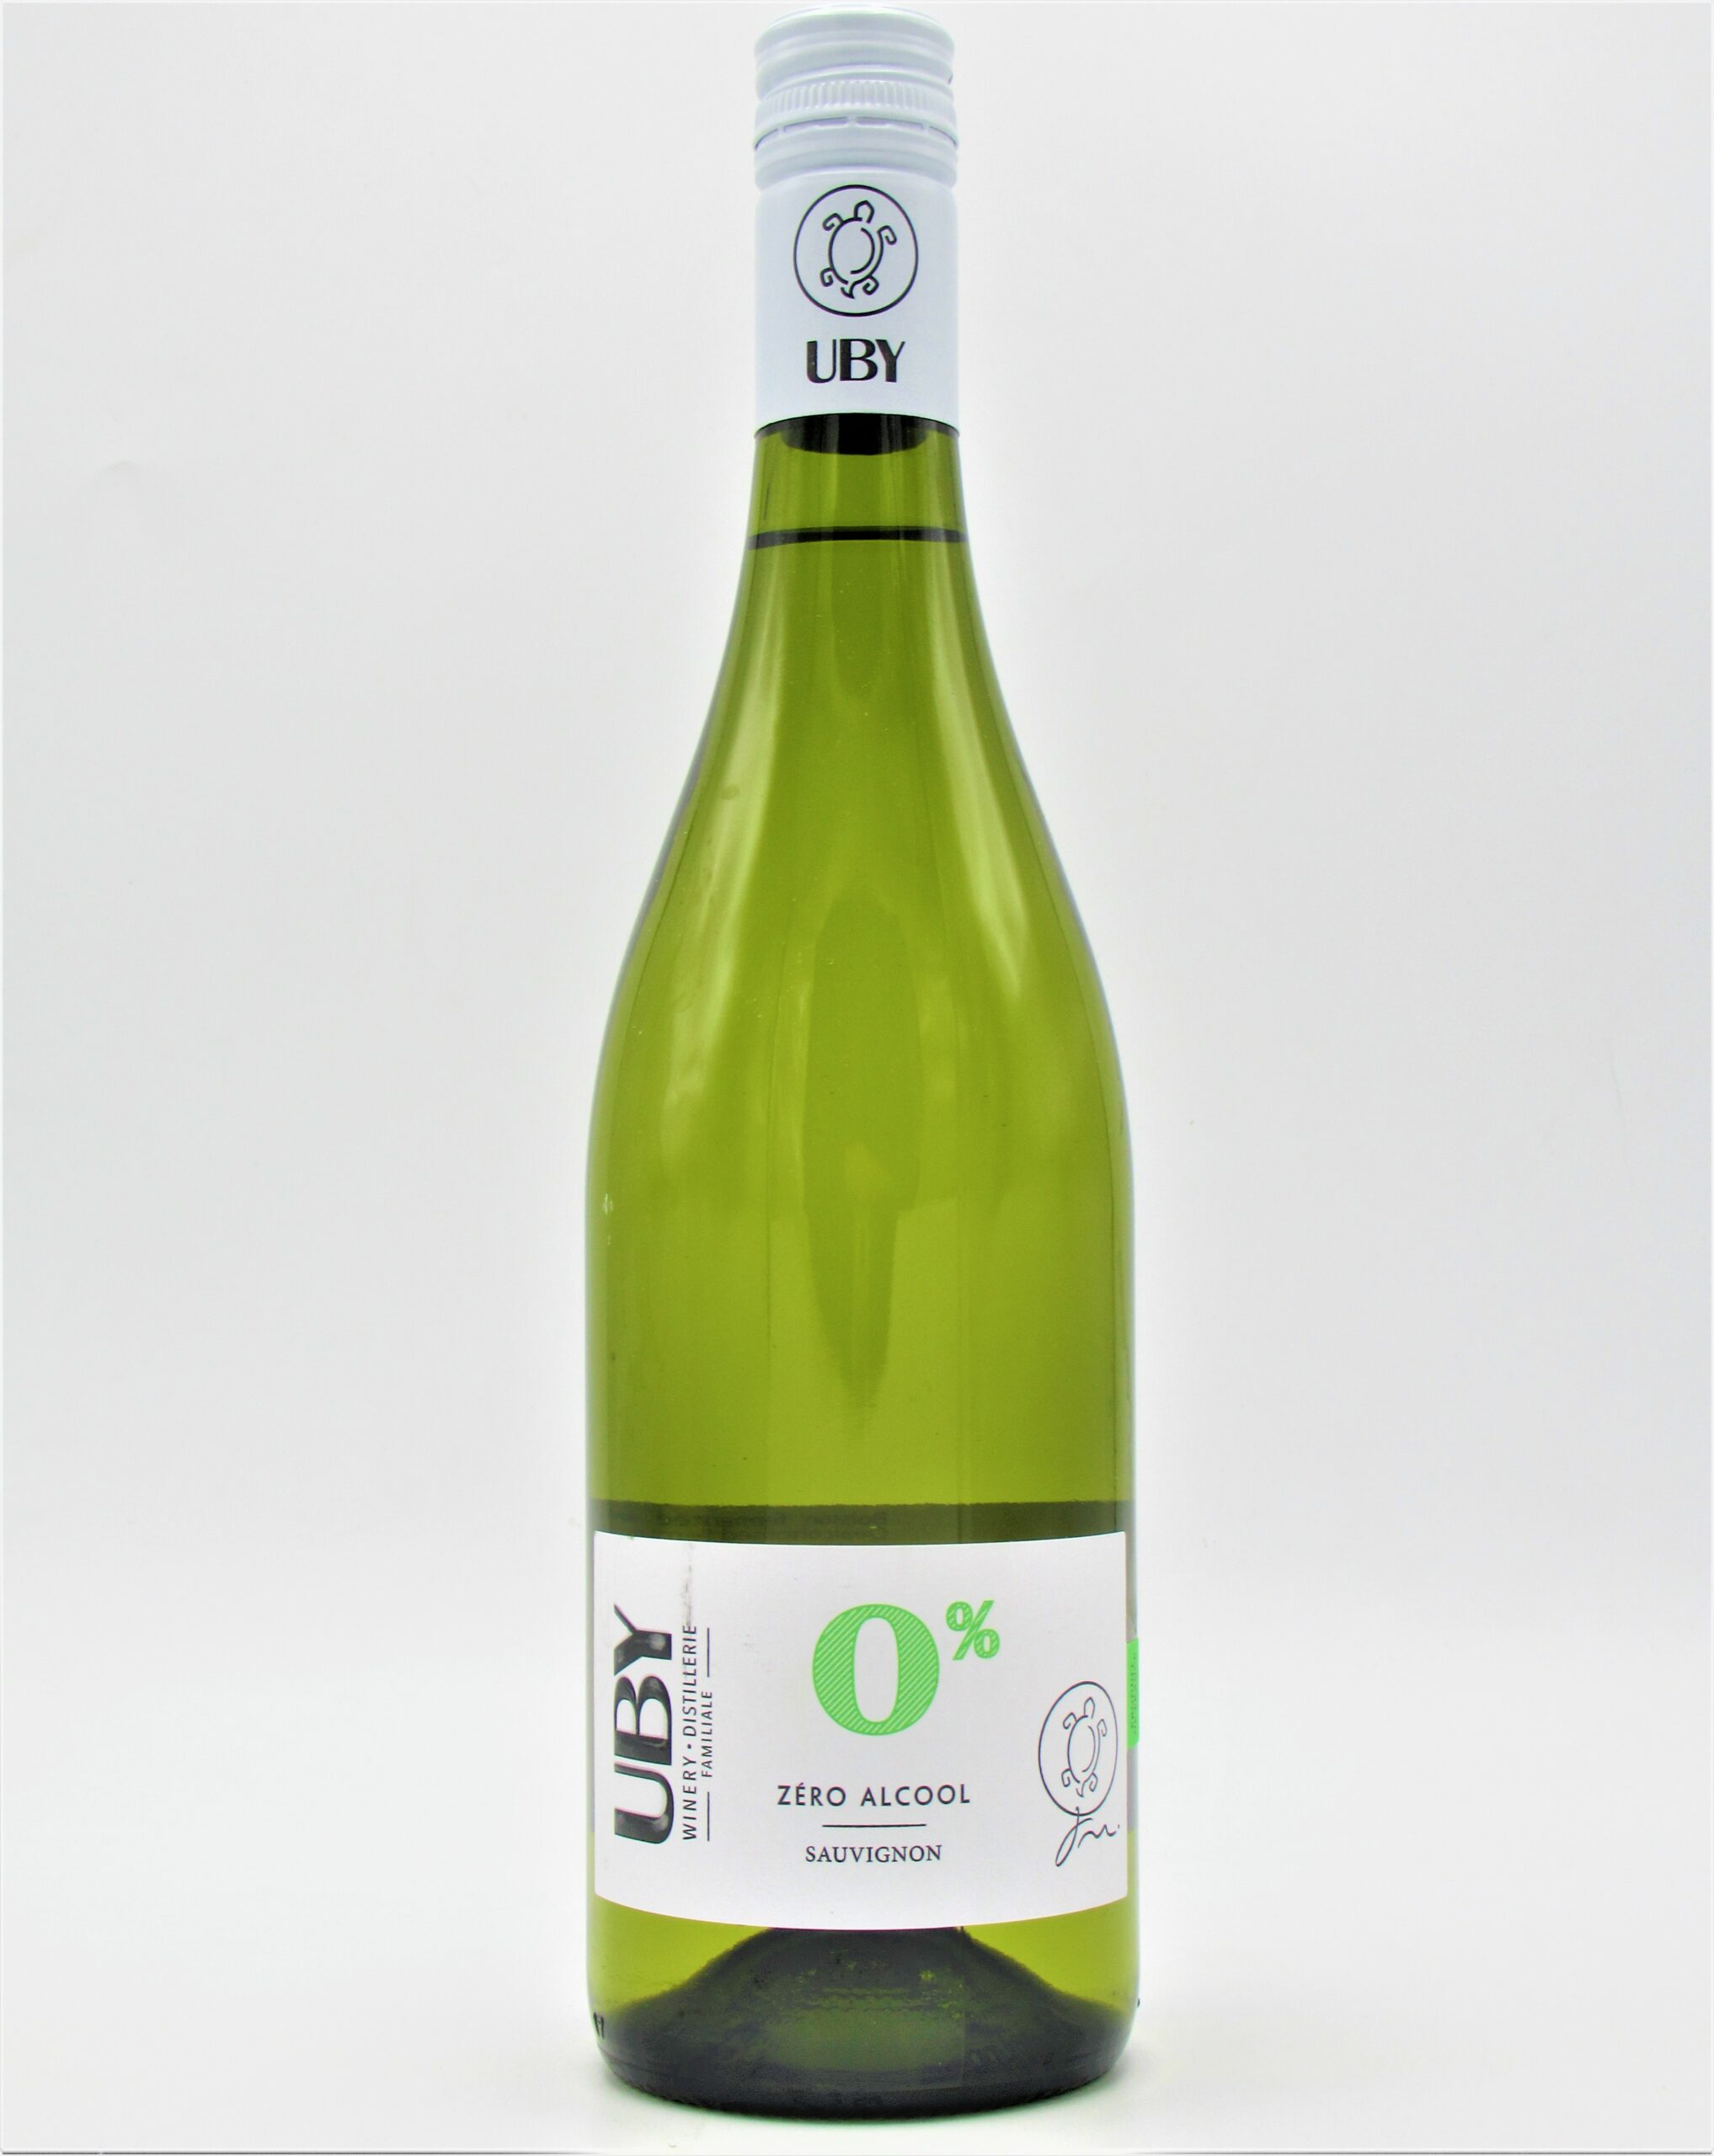 UBY sans alcool - Sauvignon Blanc - Domaine UBY